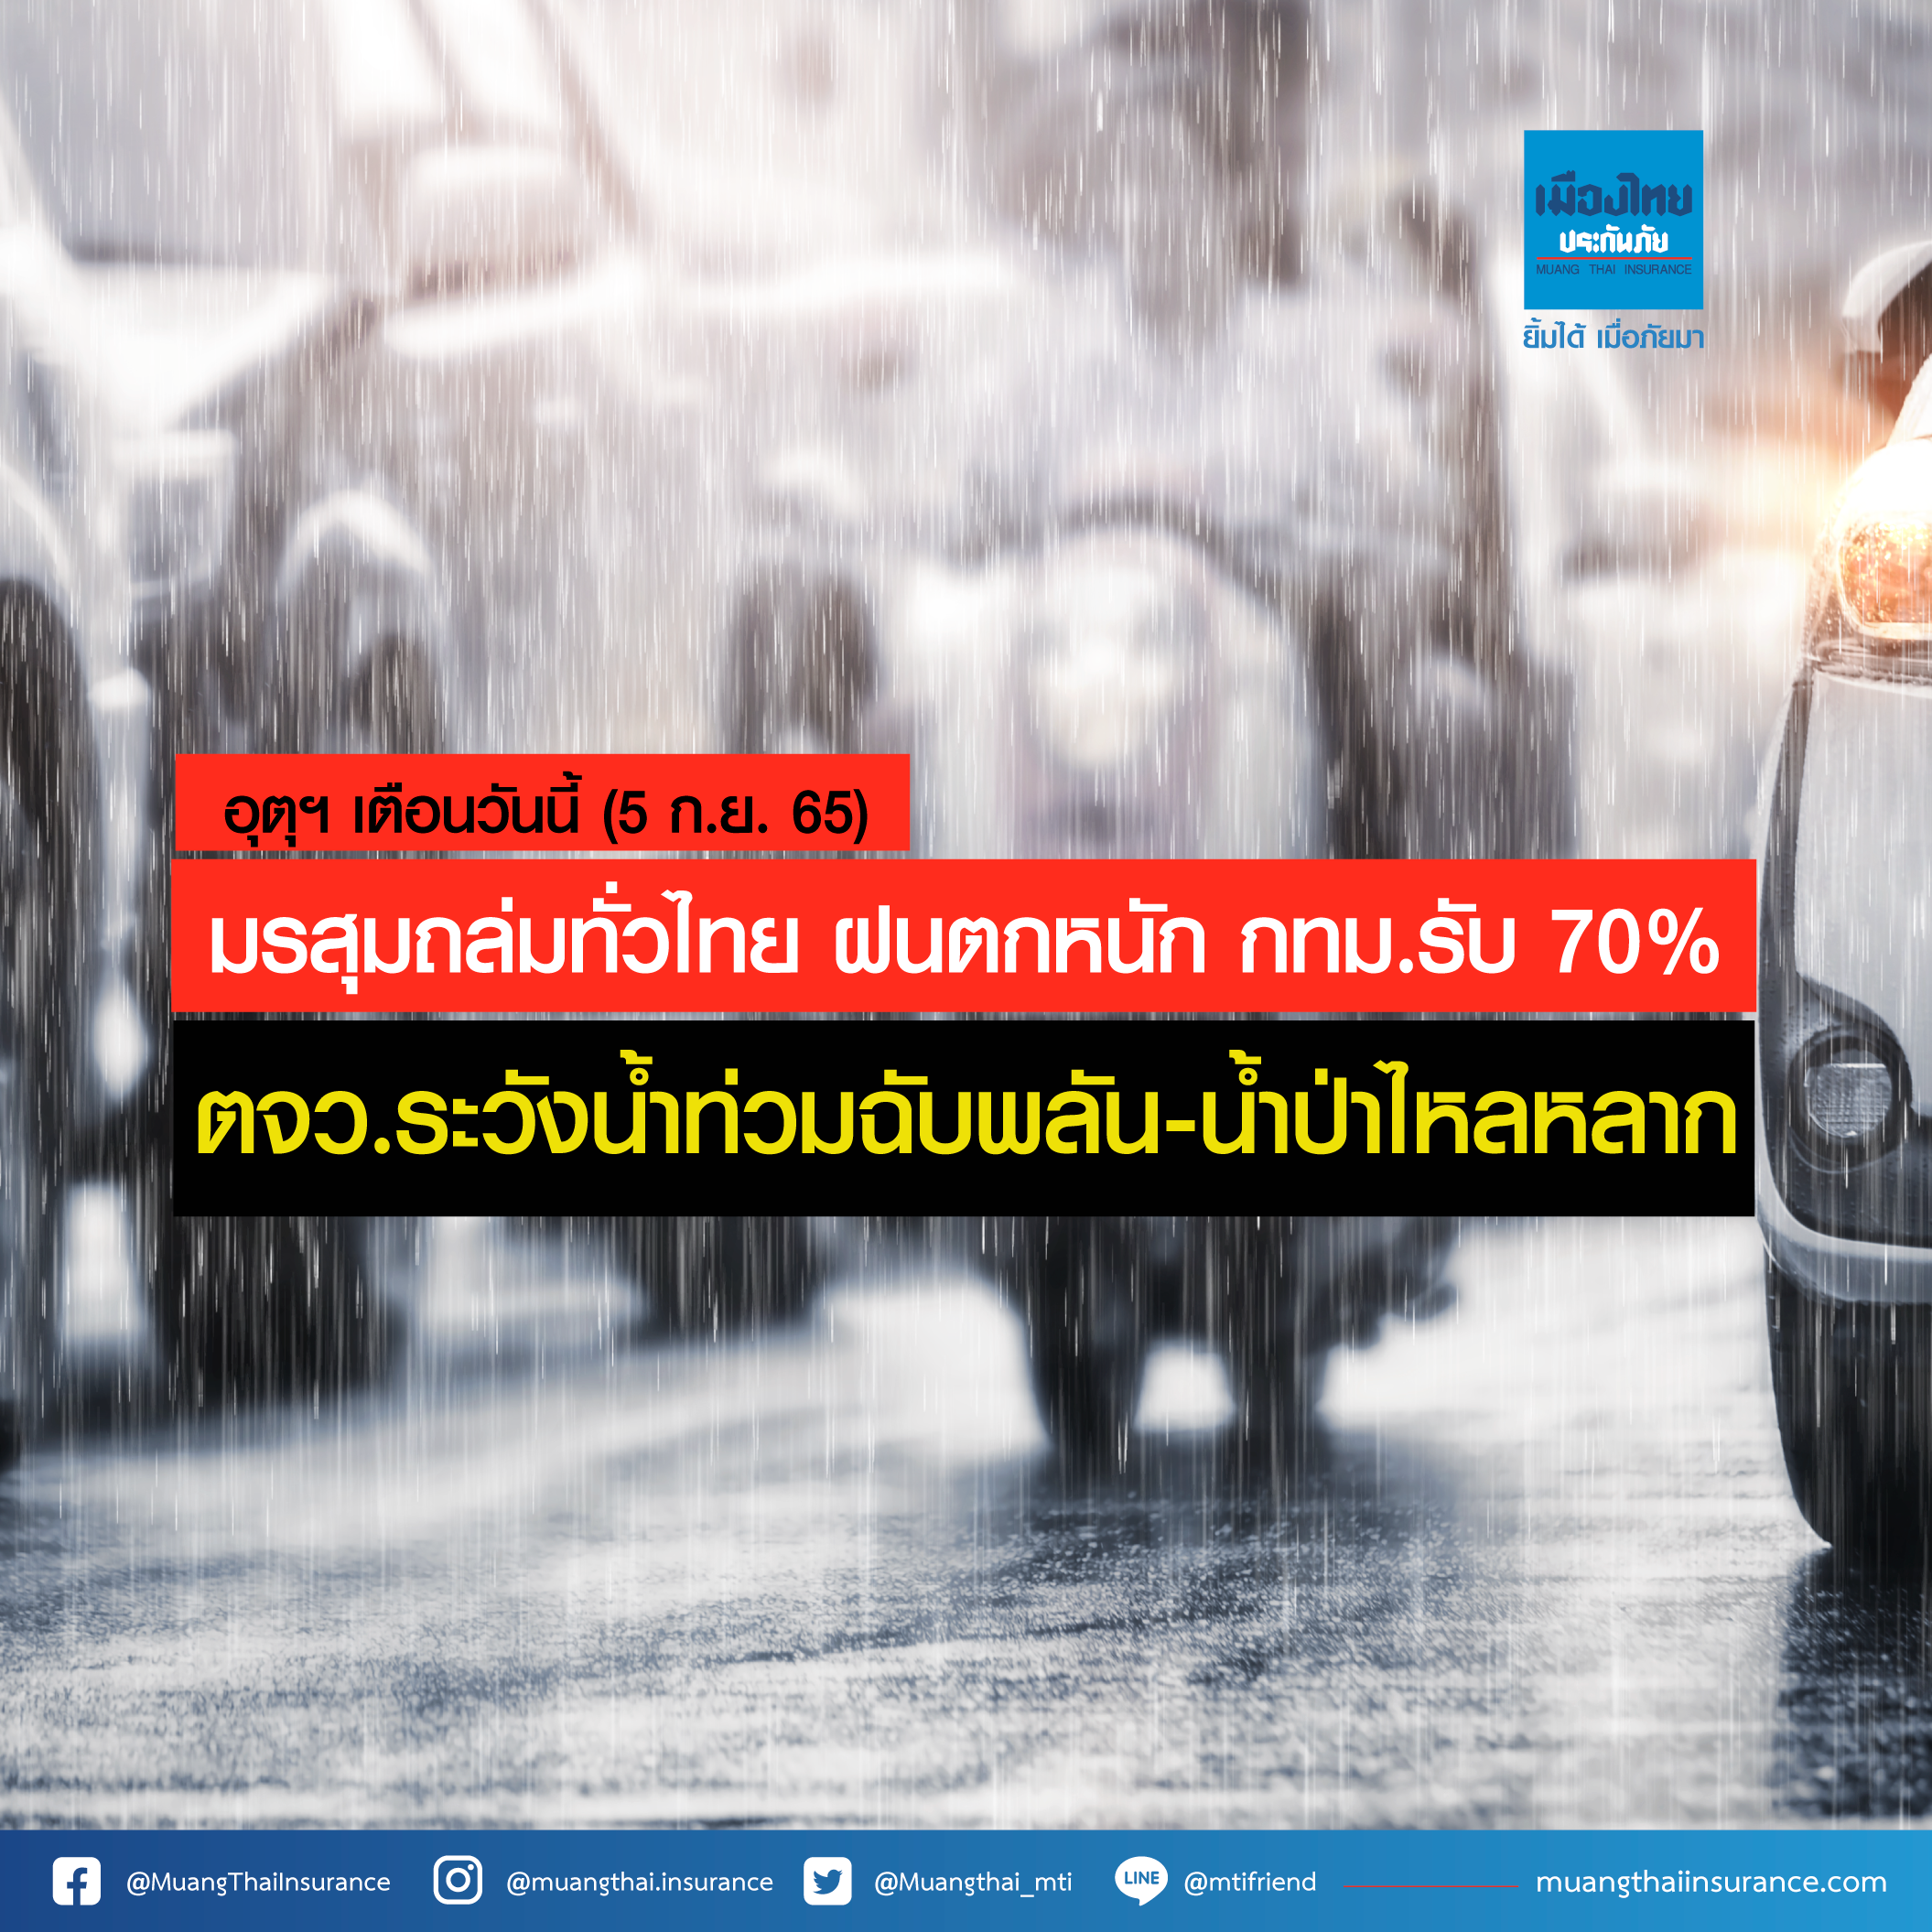 อุตุฯ เตือน มรสุมถล่มทั่วไทย ฝนตกหนัก กทม.รับ 70% ตจว.ระวังน้ำท่วมฉับพลัน น้ำป่าไหลหลาก (5 ก.ย.65)